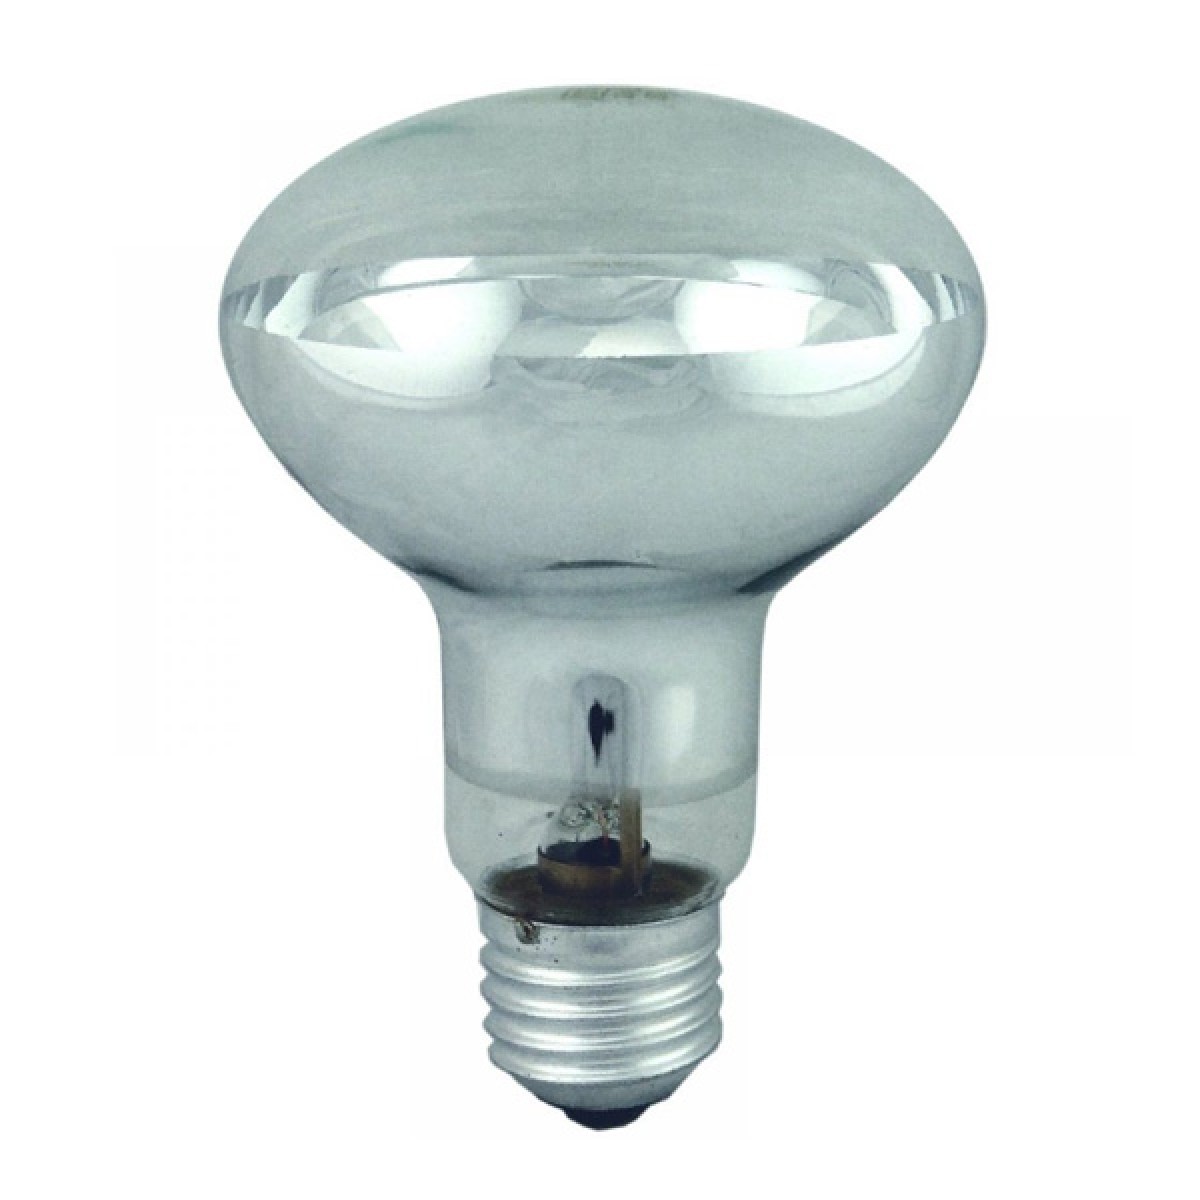 REFLECTOR LAMPS R39 R50 R63 R80 30W 40W 60W 100W ES BC E27 B22 